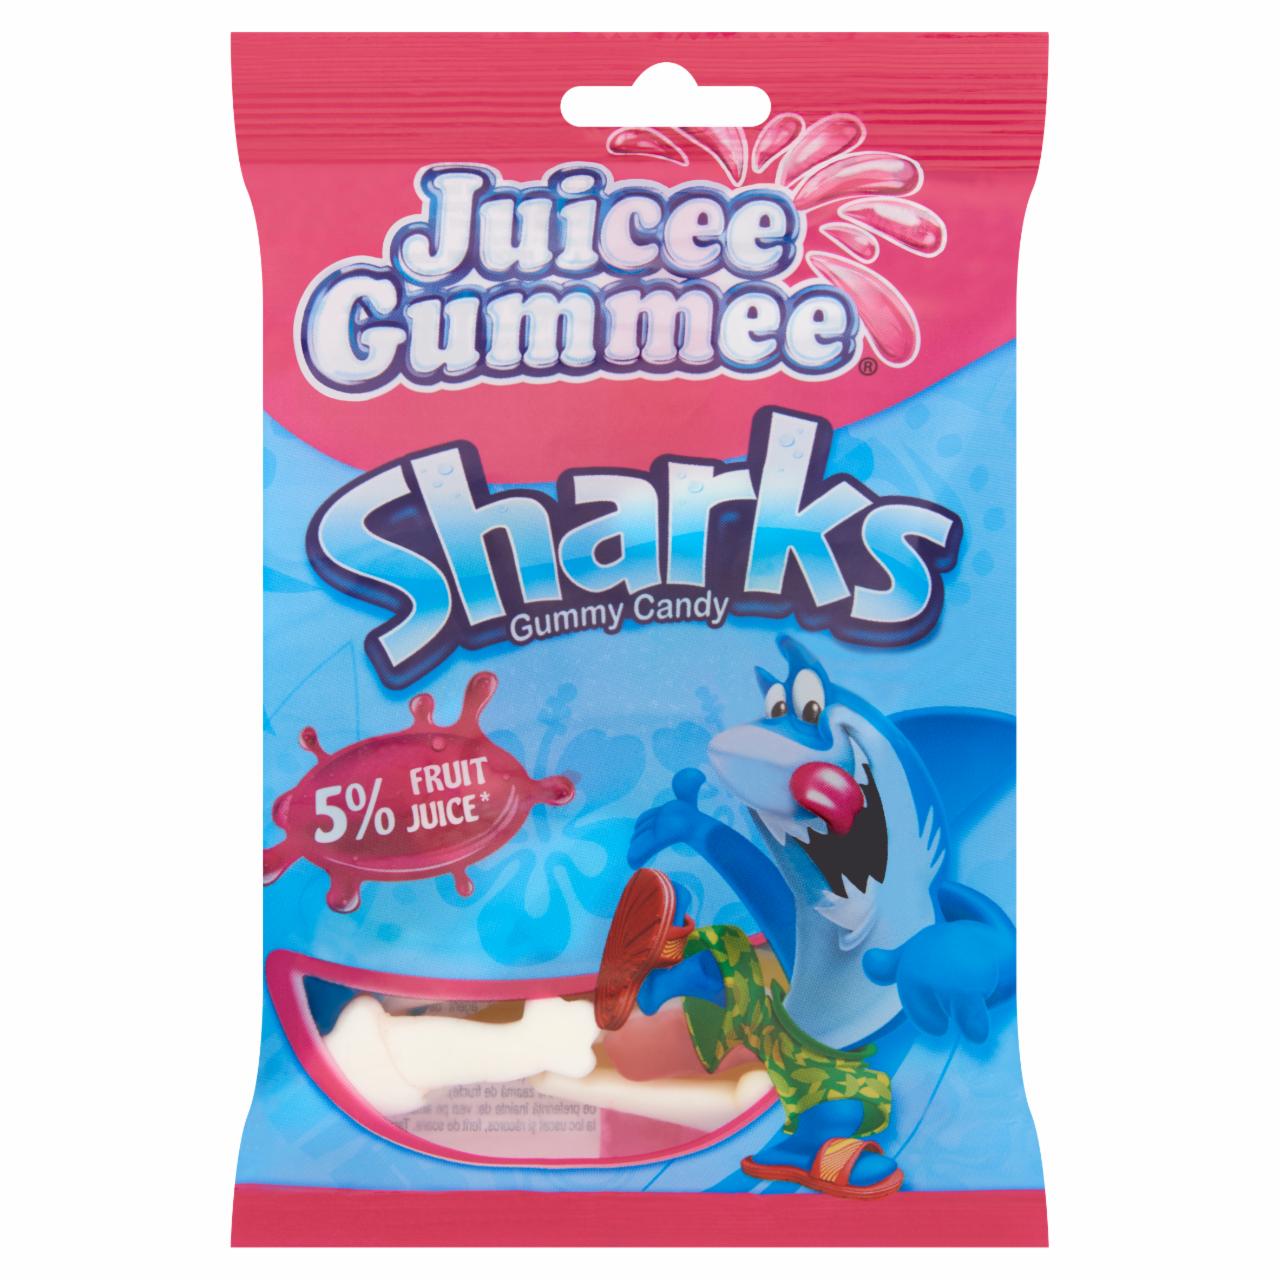 Képek - Juicee Gummee Sharks gyümölcsös ízű gumicukor 100 g